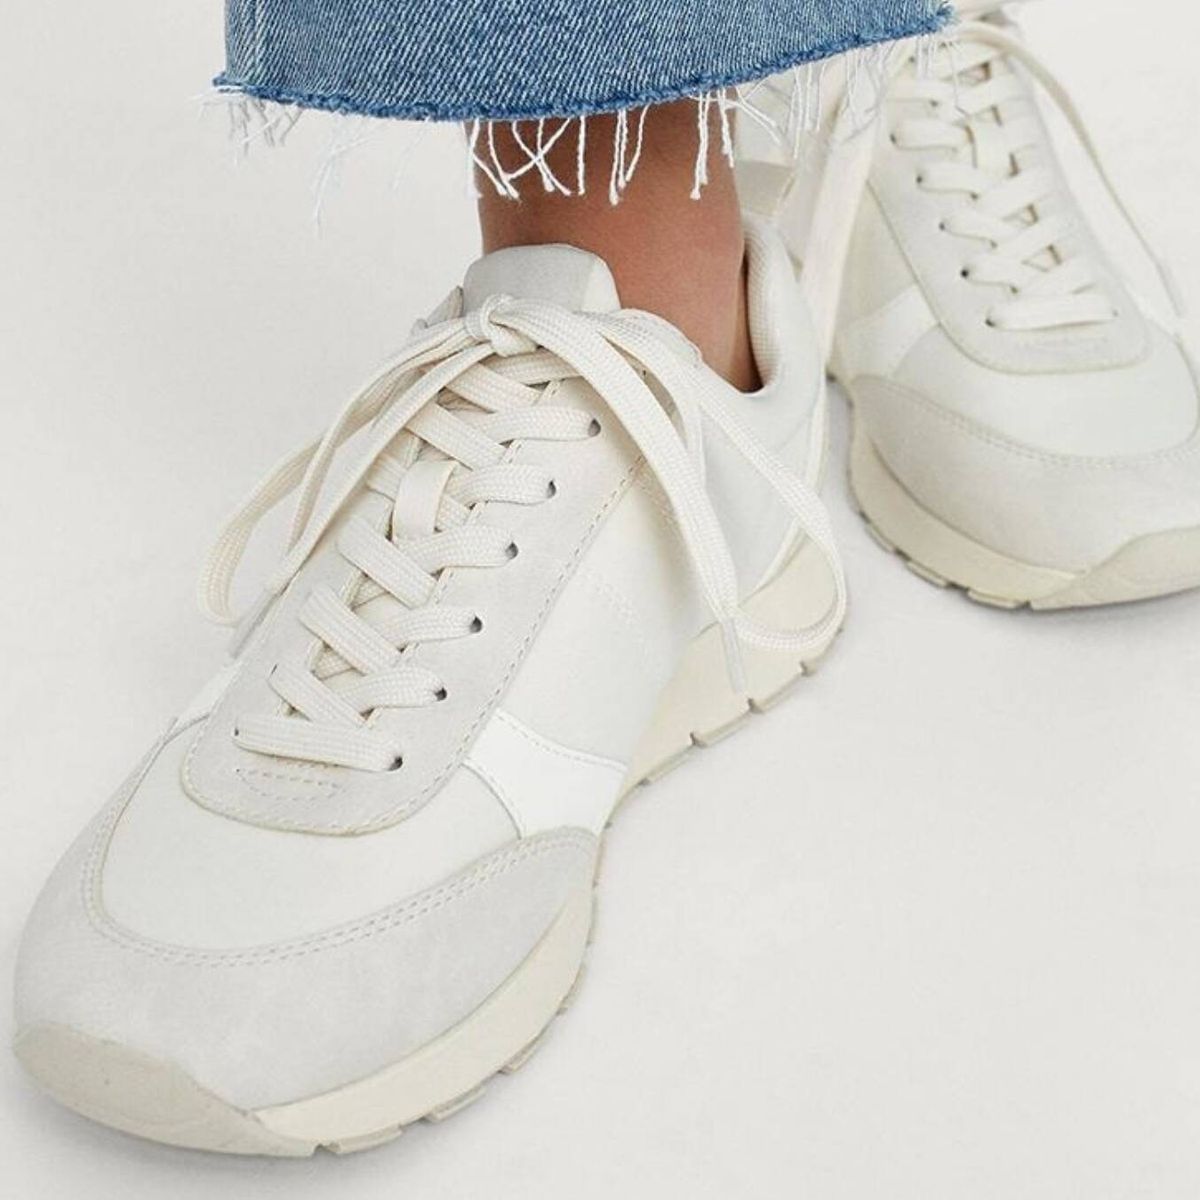 Zapatillas de hombre blancas Clásicas, • Modelo 2022 •